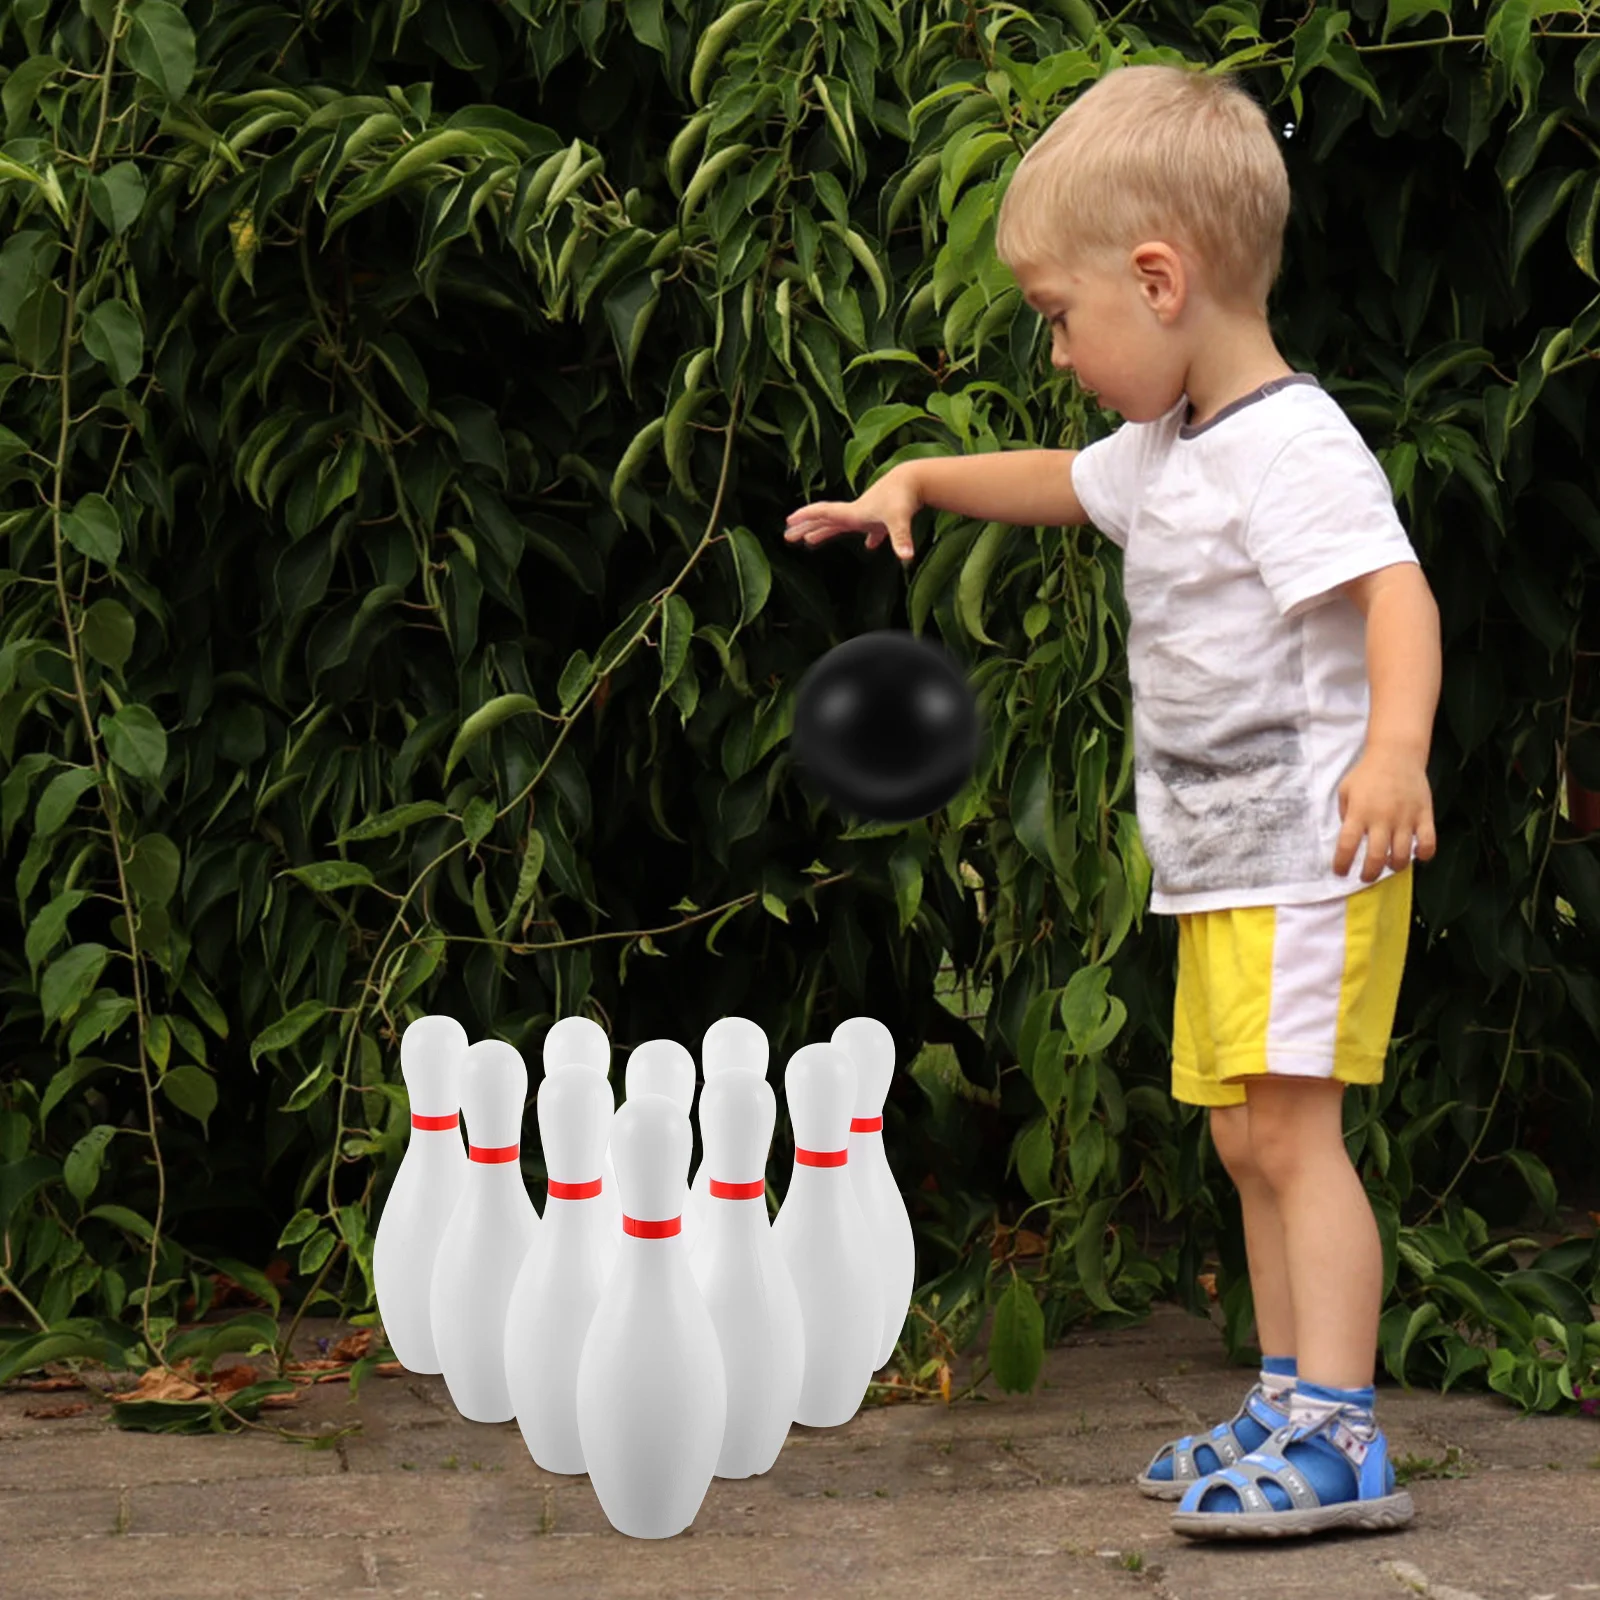 Hraček plasitc bowlingové divadelní hra sada požitek bowlingové hry rodič děti interaktivní hračka pro domácí škola (white)